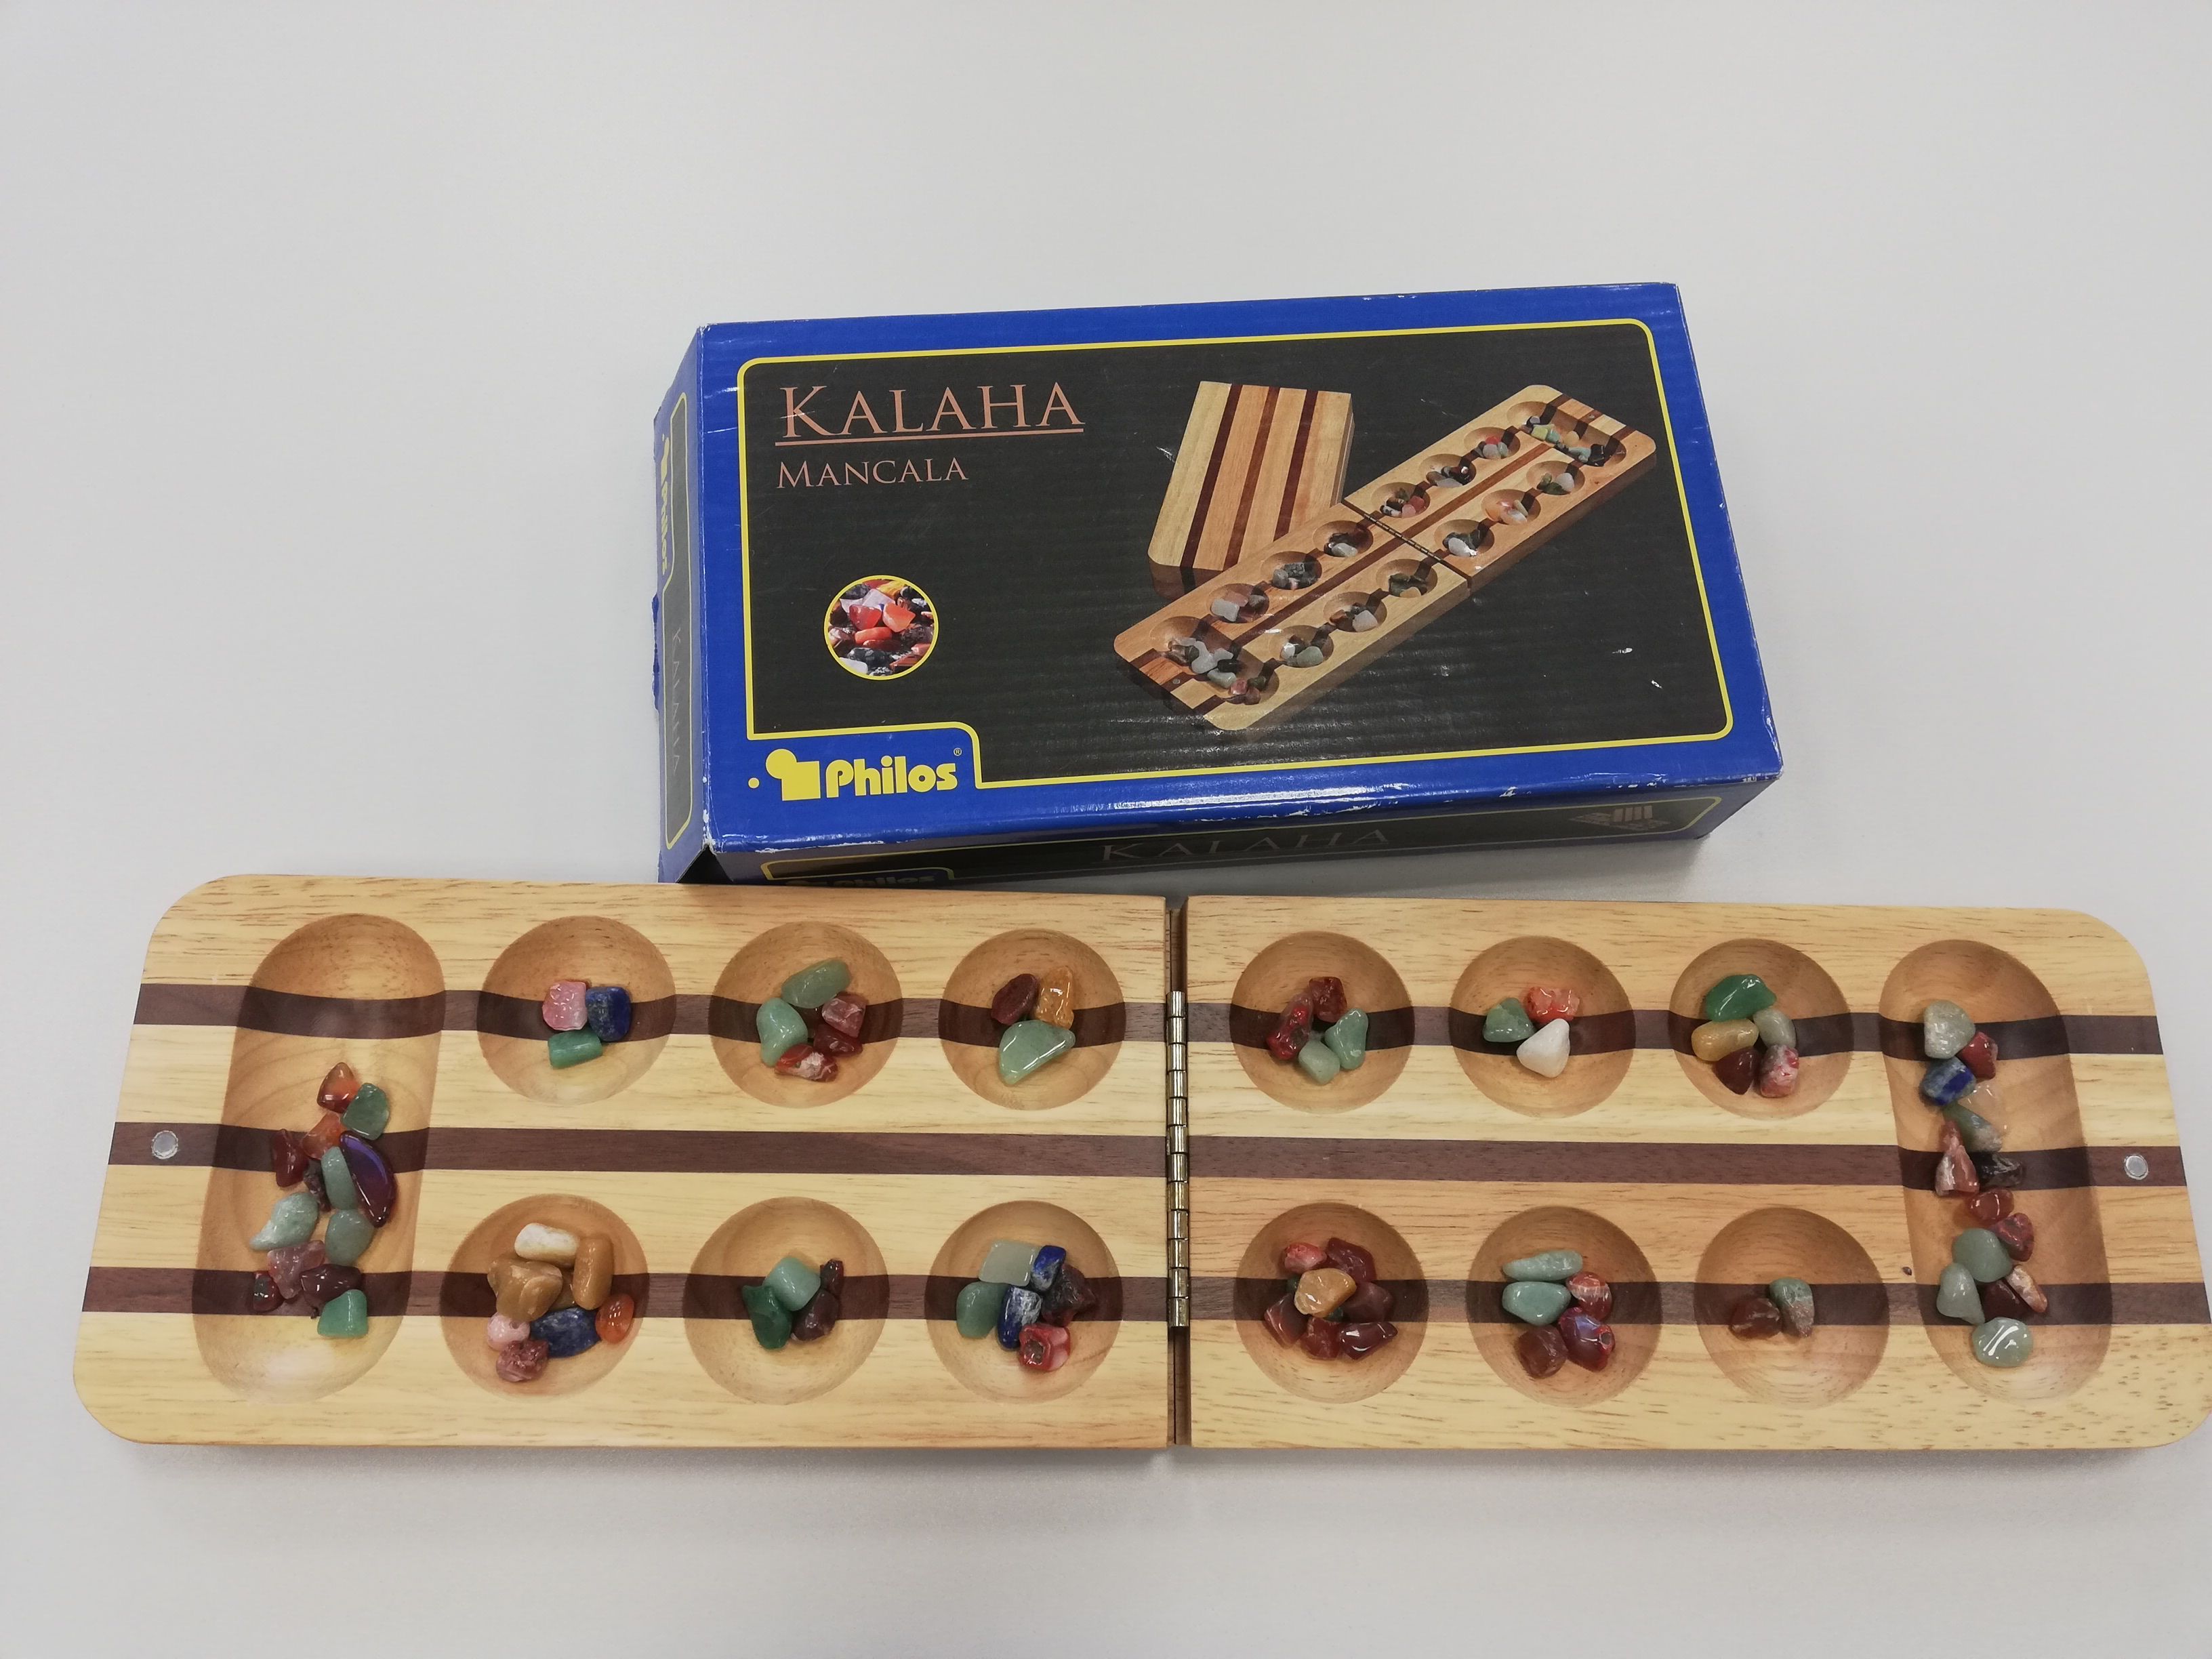 Das aufgeklappte rechteckige Spielbrett hat links und rechts eine Kalaha und dazwischen zwei Reihen runde Mulden. In den Kalaha’s und den Mulden liegen Spielsteine in unterschiedlicher Anzahl. 